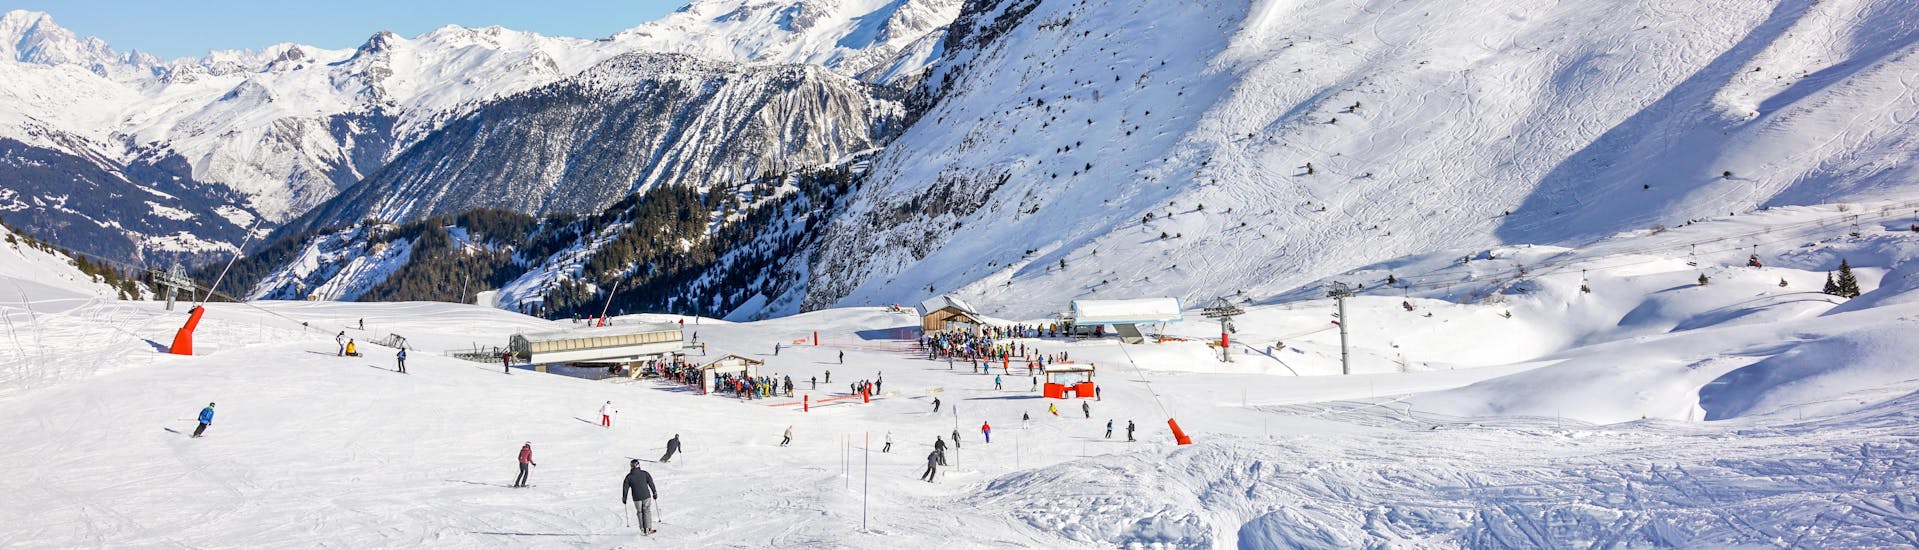 Des personnes profitent du ski lors d'une journée ensoleillée dans la station de ski de Courchevel 1850.